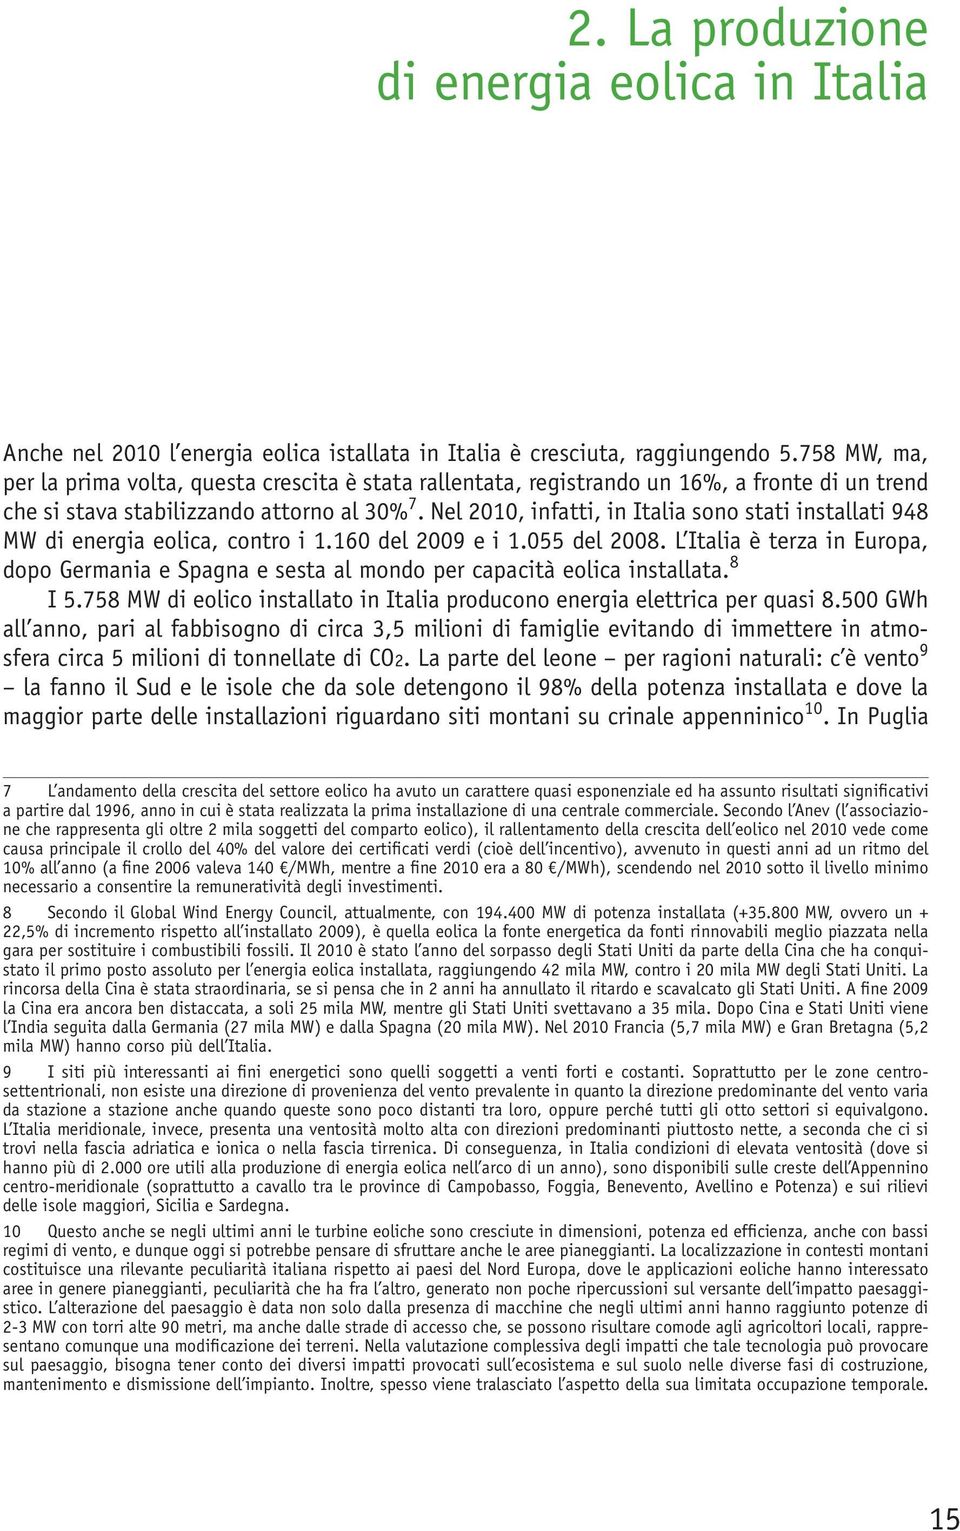 Nel 2010, infatti, in Italia sono stati installati 948 MW di energia eolica, contro i 1.160 del 2009 e i 1.055 del 2008.